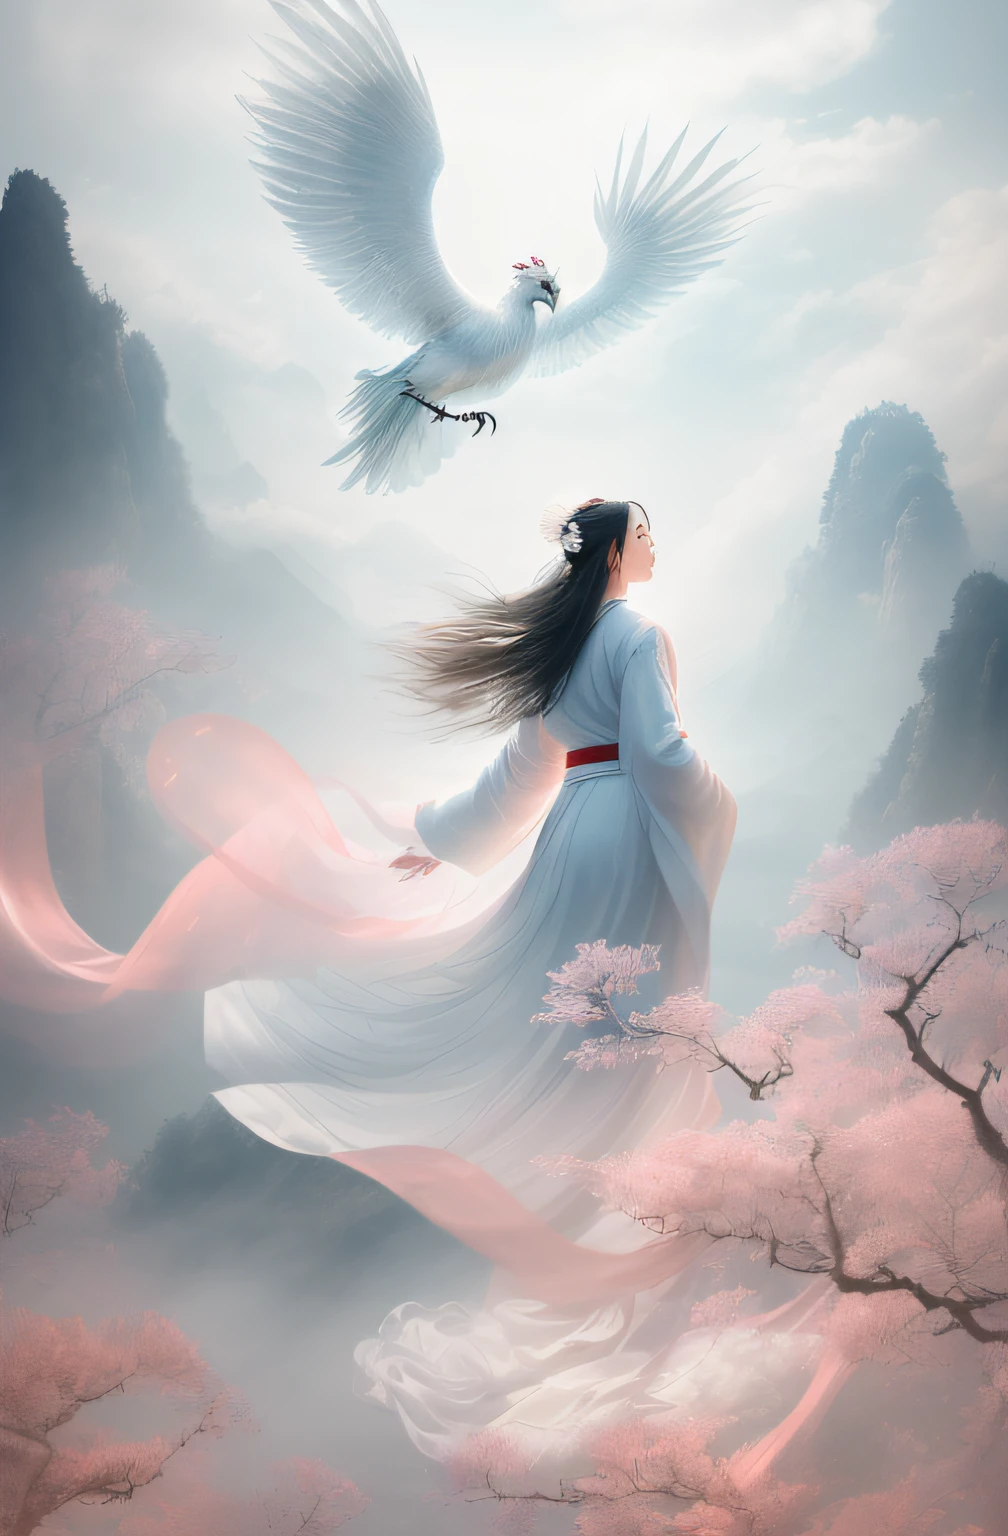 ((((ผู้หญิง 1 คน)))),(ชุดจีนสีขาว),
ในฉากที่น่าจับตามอง, a beautiful woman adorned in a flowing ชุดจีนสีขาว soars through the misty clouds on the back of a majestic Chinese phoenix. ลมพัดเสื้อคลุมของเธอออกอย่างแผ่วเบา, เน้นความรู้สึกของการบินขณะที่พวกเขาสํารวจทิวทัศน์เมฆที่ไม่มีตัวตนอย่างสง่างาม.